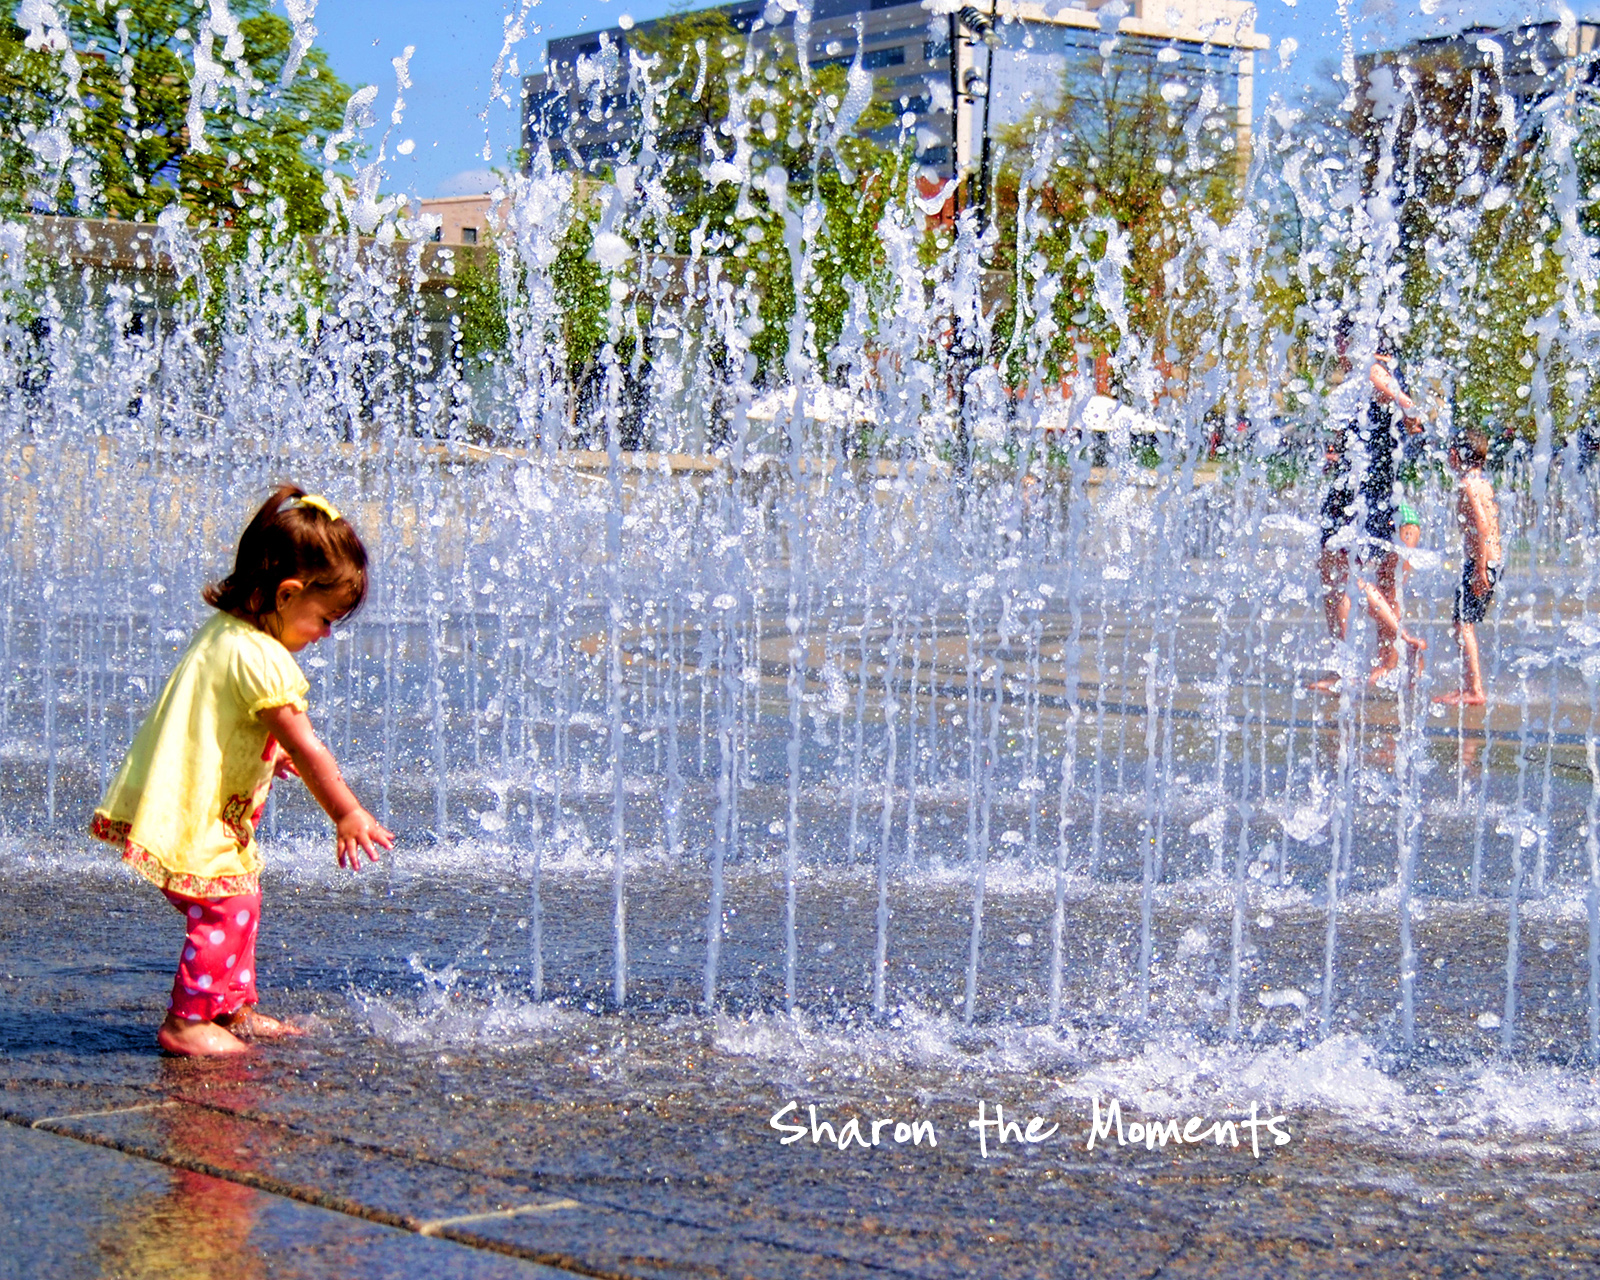 Monday Monday Spring Scioto Mile Fountains Downtown Columbus Ohio|Sharon the Moments blog